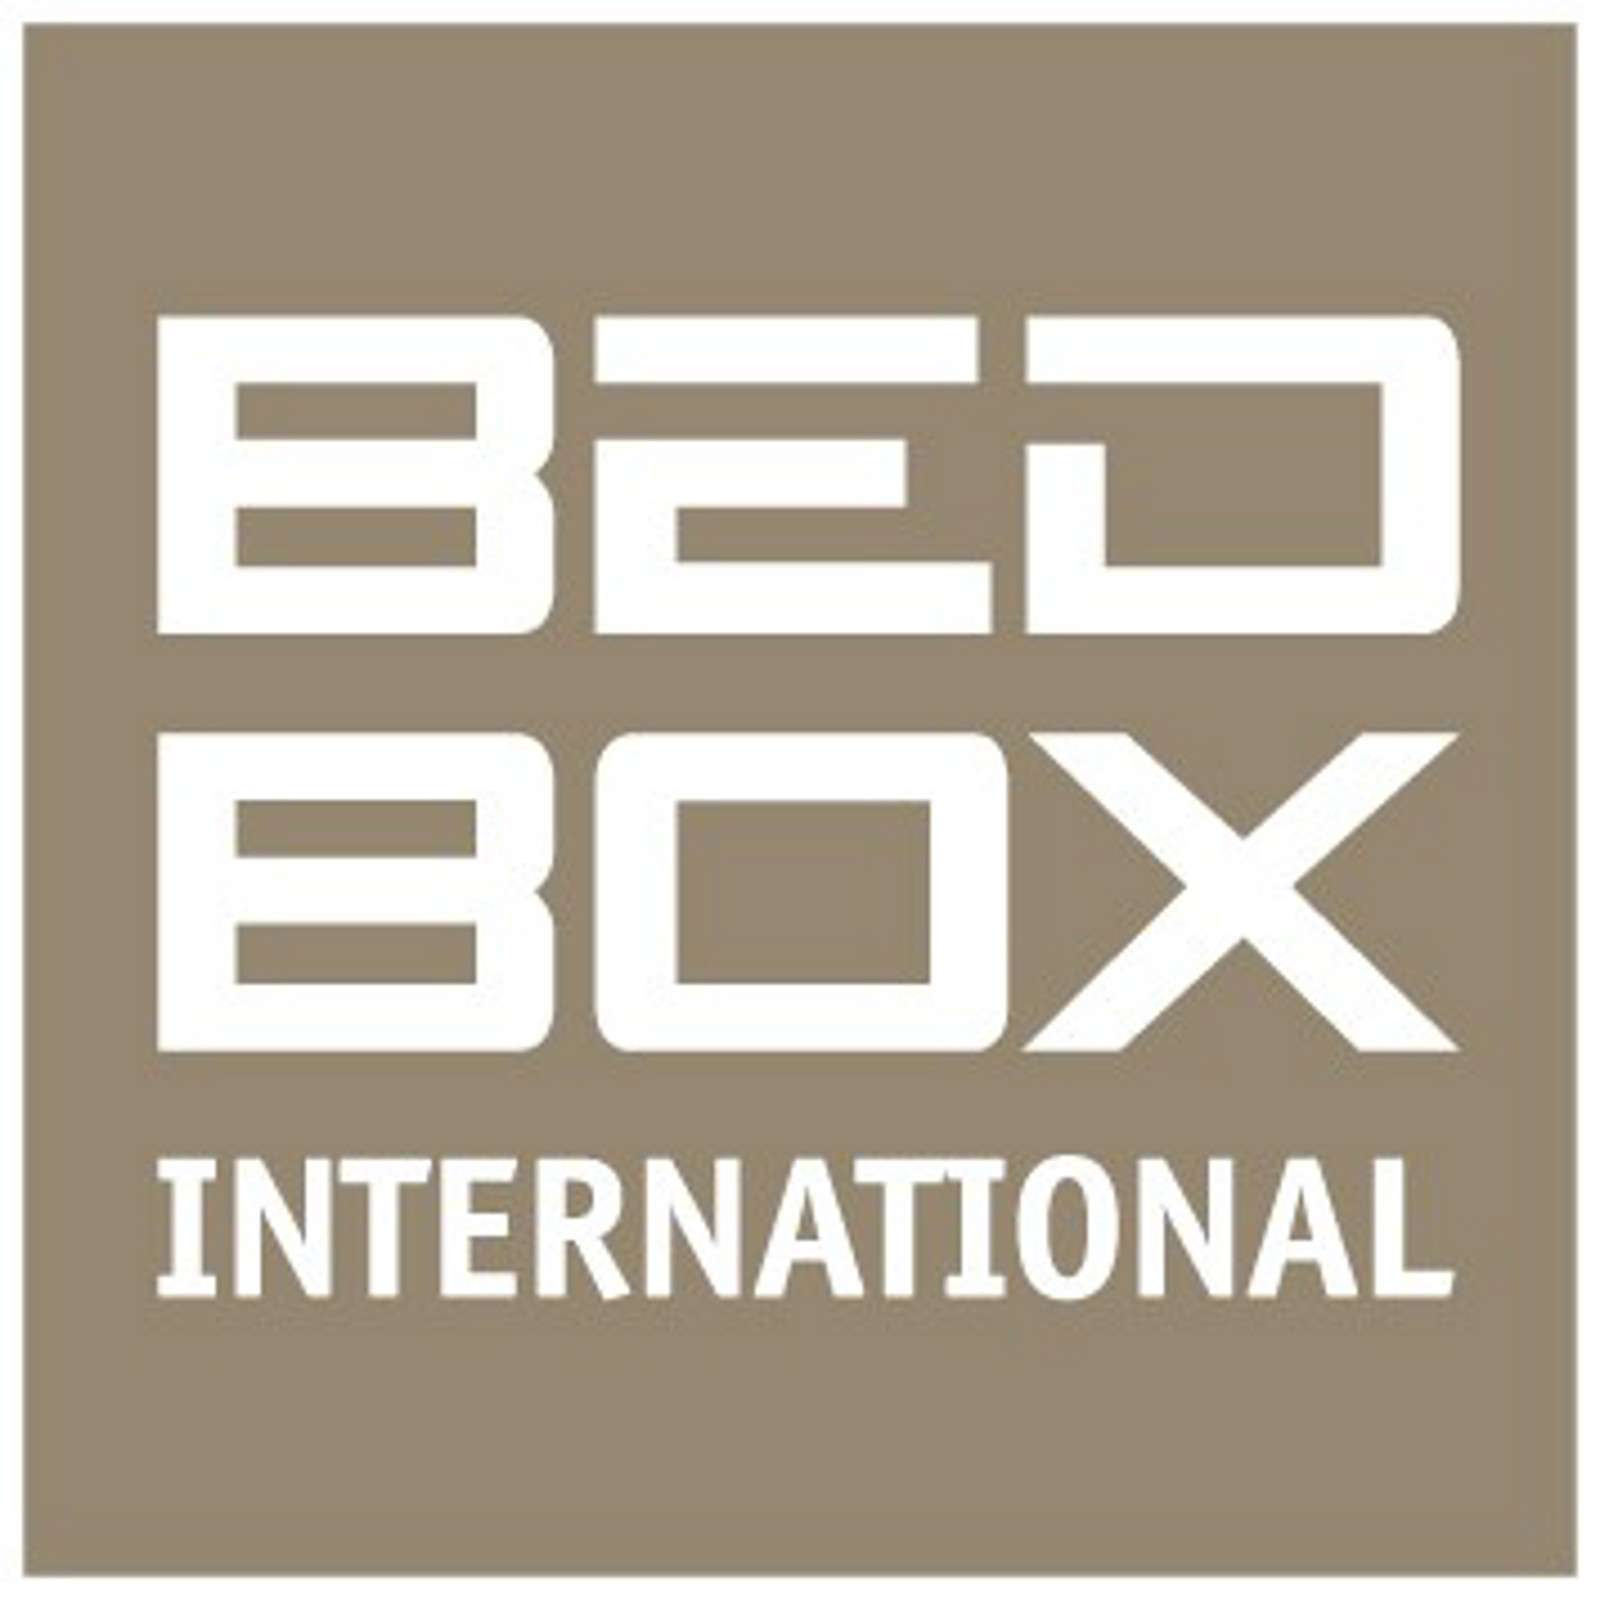 Bed Box